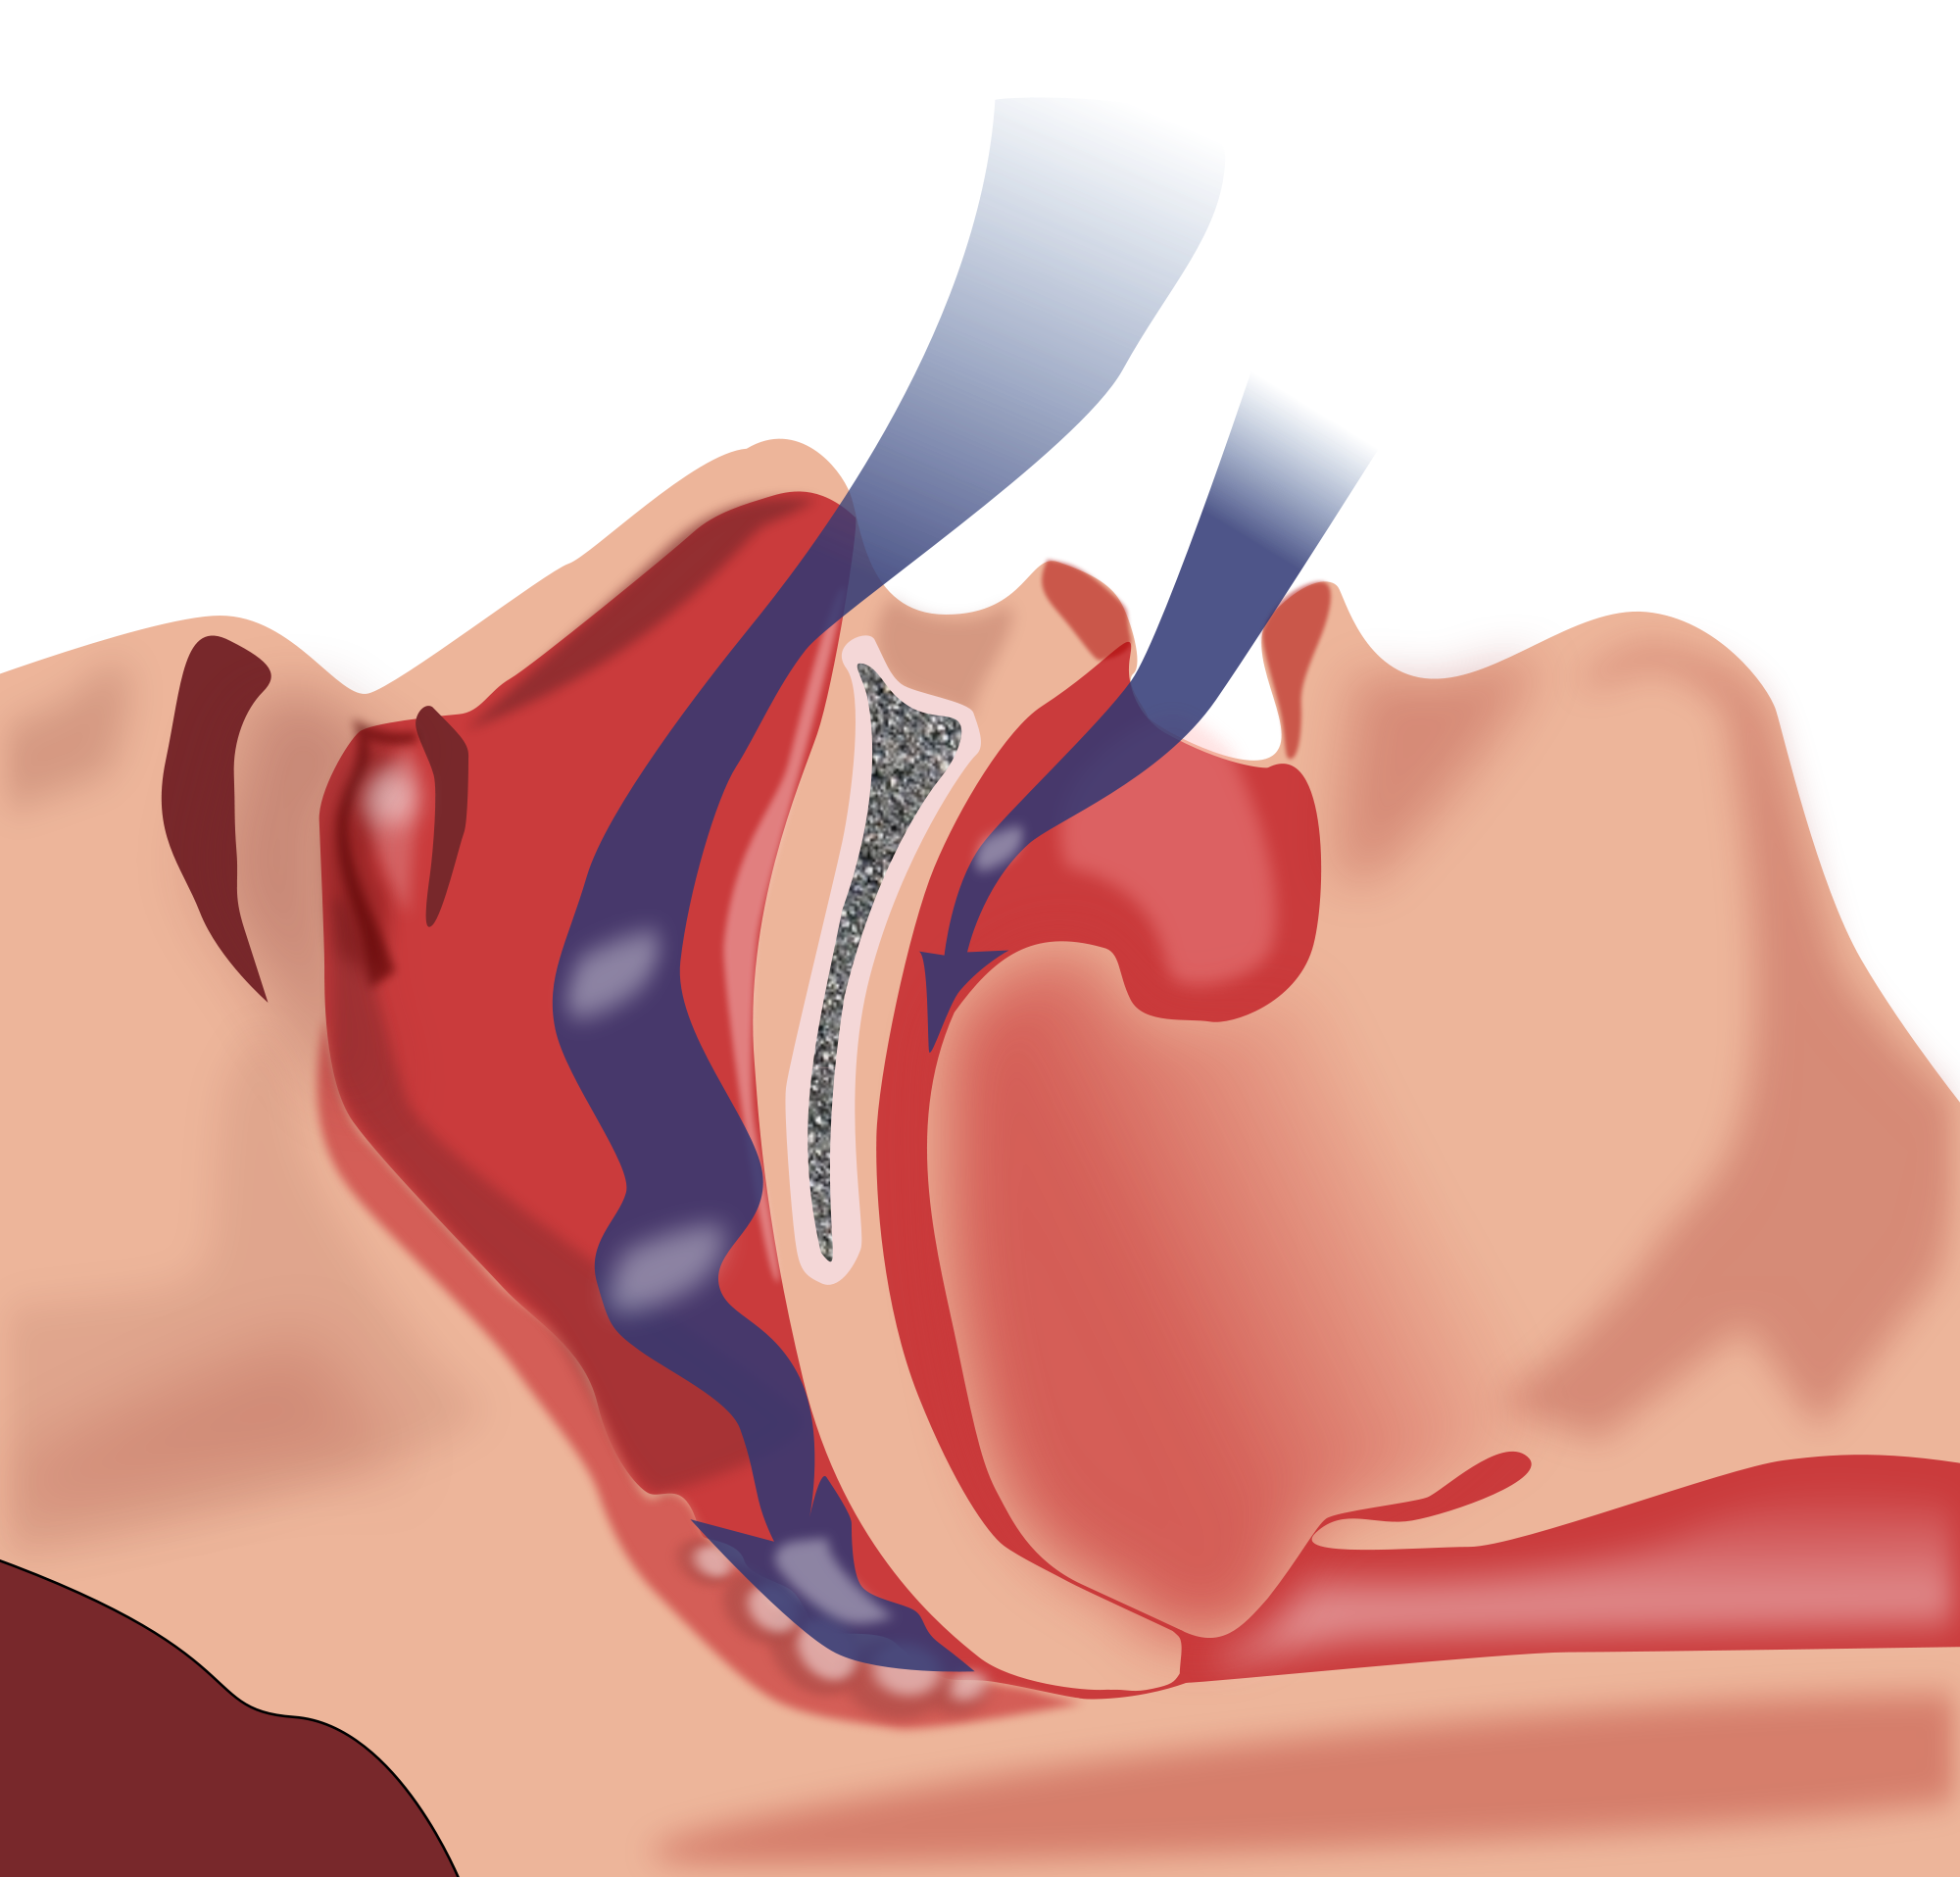 Возможна кратковременная задержка апноэ, состояние опасно тем, что протекает незаметно для человека, когда он спит, обычно при длительной задержке дыхания (на 1 – 2 минуты) центральная нервная система (ЦНС) дает сигнал к просыпанию, но иногда что-то может не сработать, от длительного кислородного голодания пострадают жизненно важные центры (дыхательный, сосудодвигательный), апноэ во время сна может привести к гибели человека